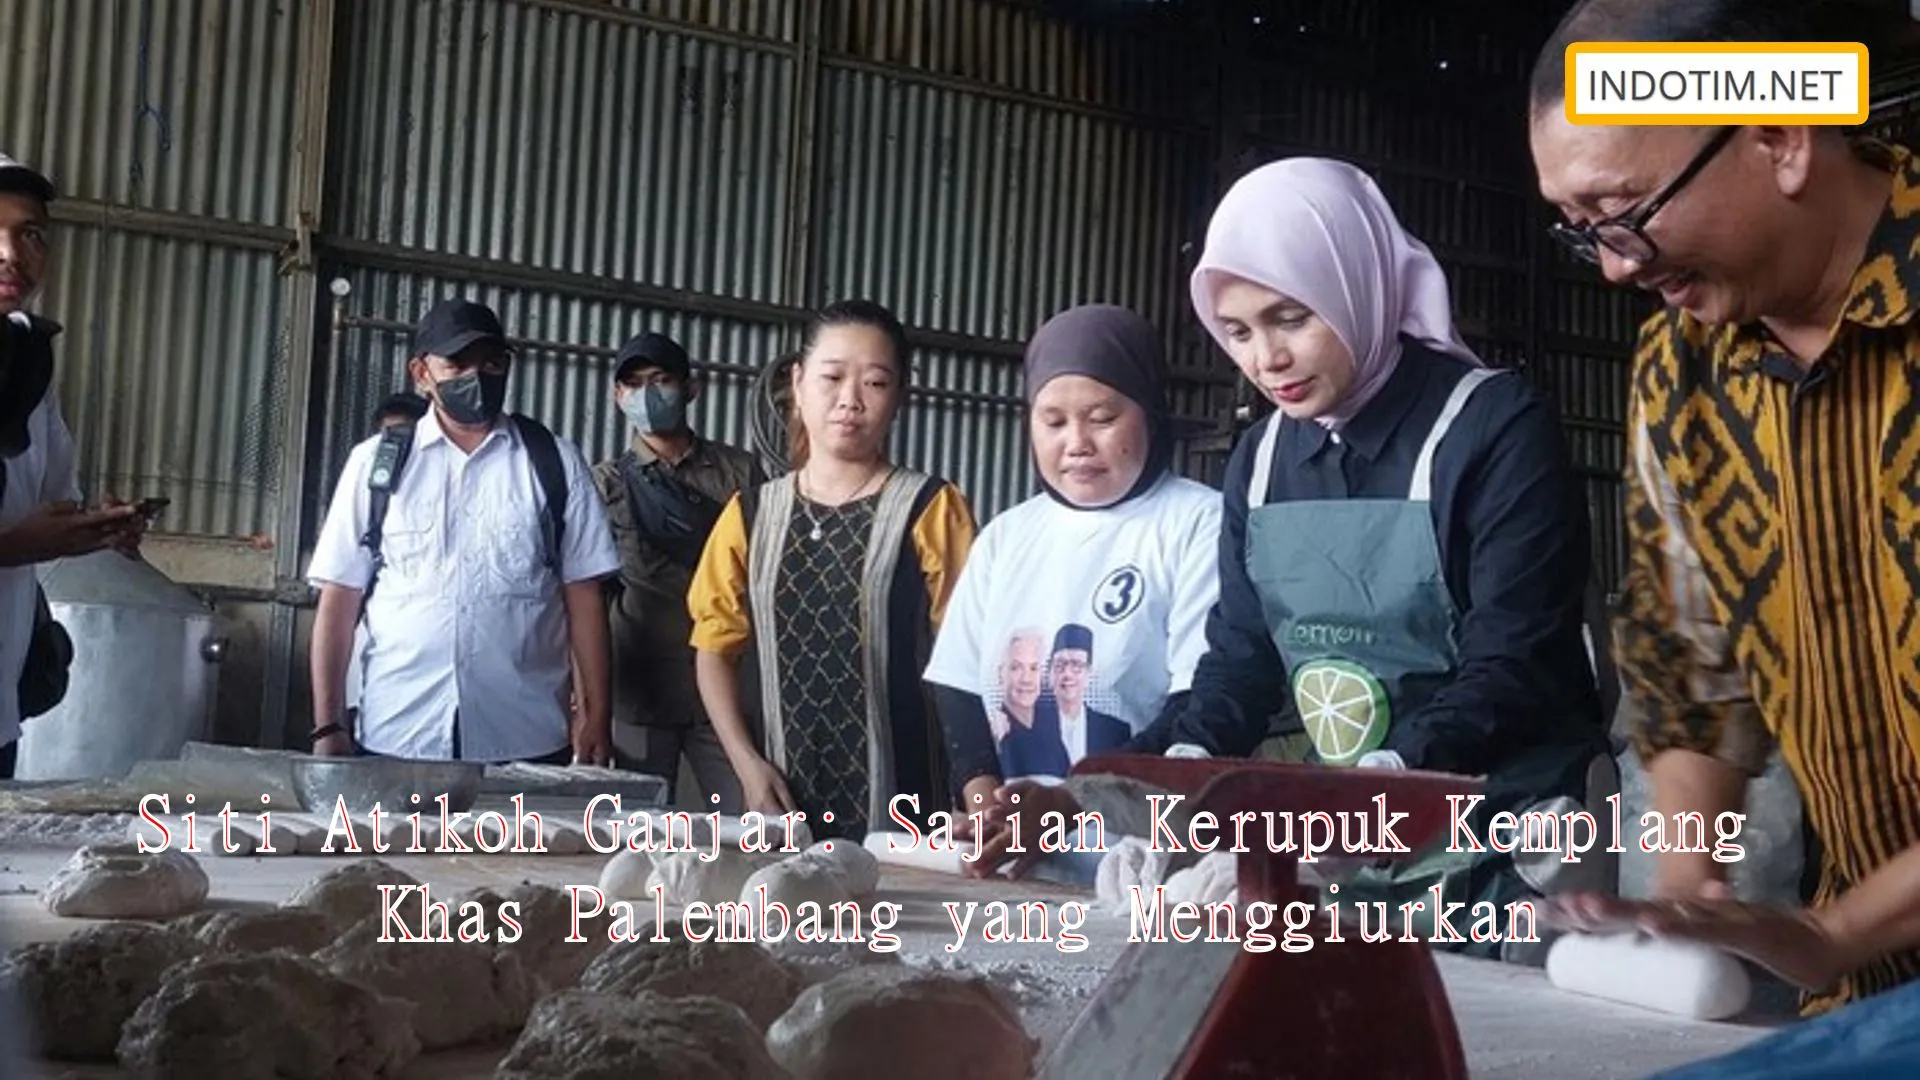 Siti Atikoh Ganjar: Sajian Kerupuk Kemplang Khas Palembang yang Menggiurkan